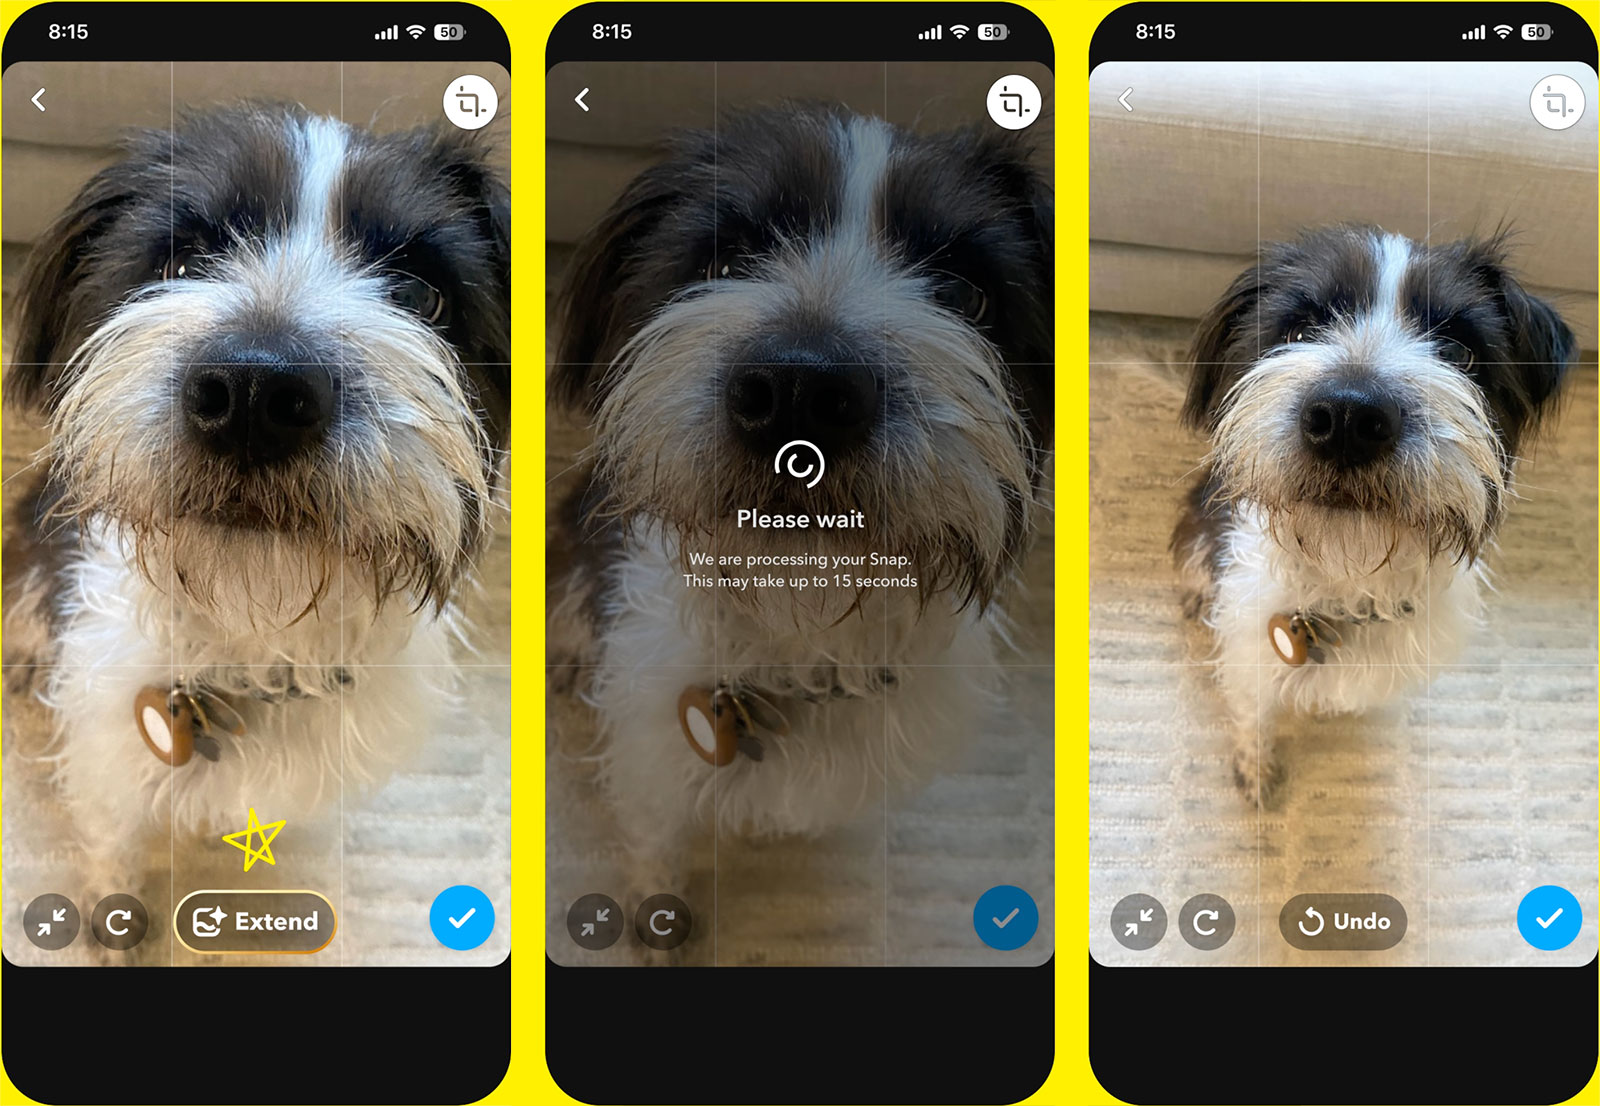 Подписчики Snapchat+ теперь могут использовать ИИ для создания или расширения изображений в приложении